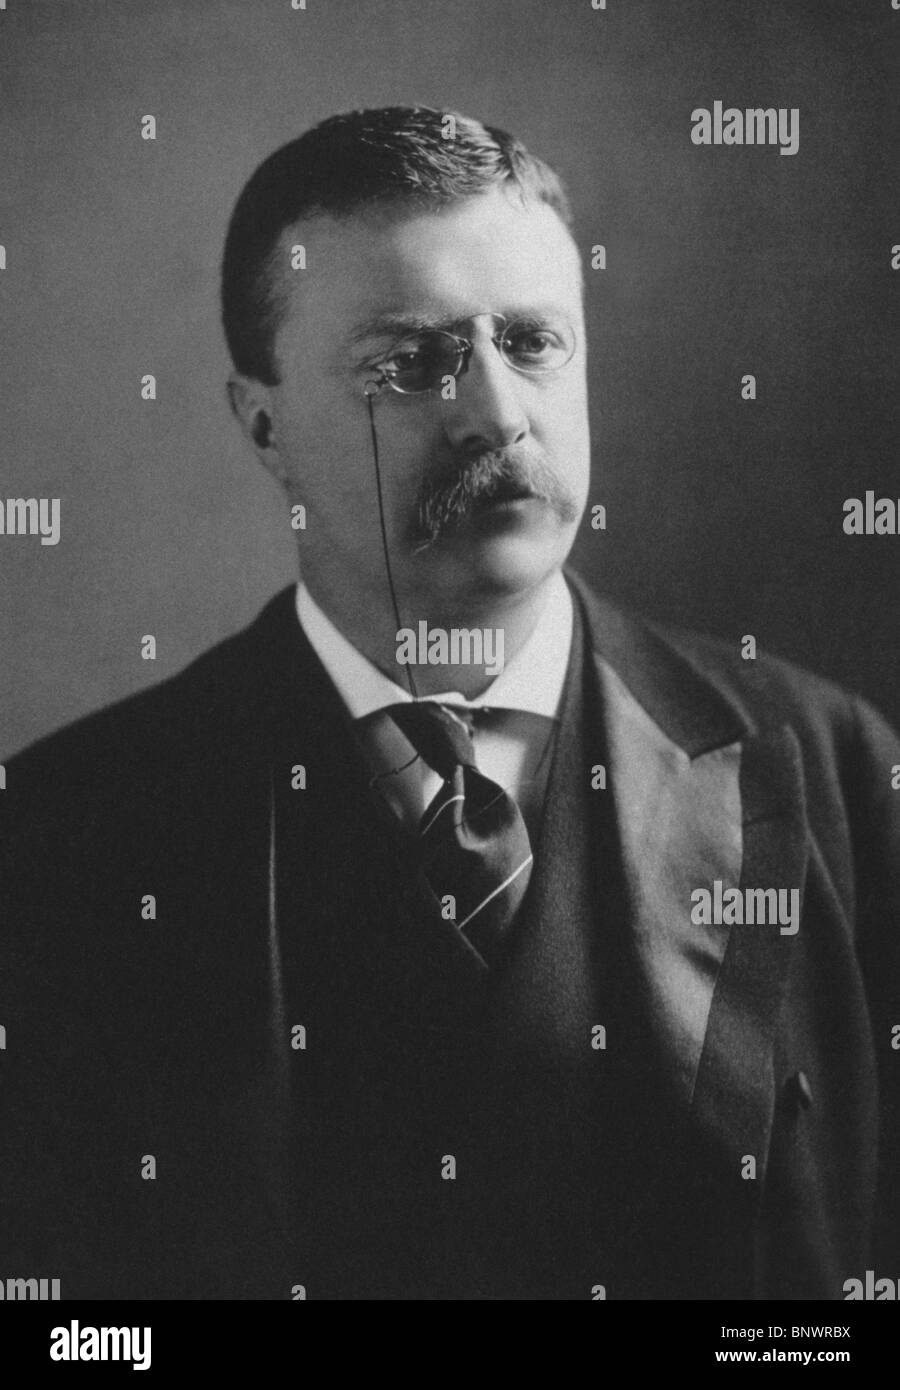 Portrait photo vers 1902 de 'Teddy' Theodore Roosevelt (1858 - 1919) - le 26e président des États-Unis (1901 - 1909). Banque D'Images